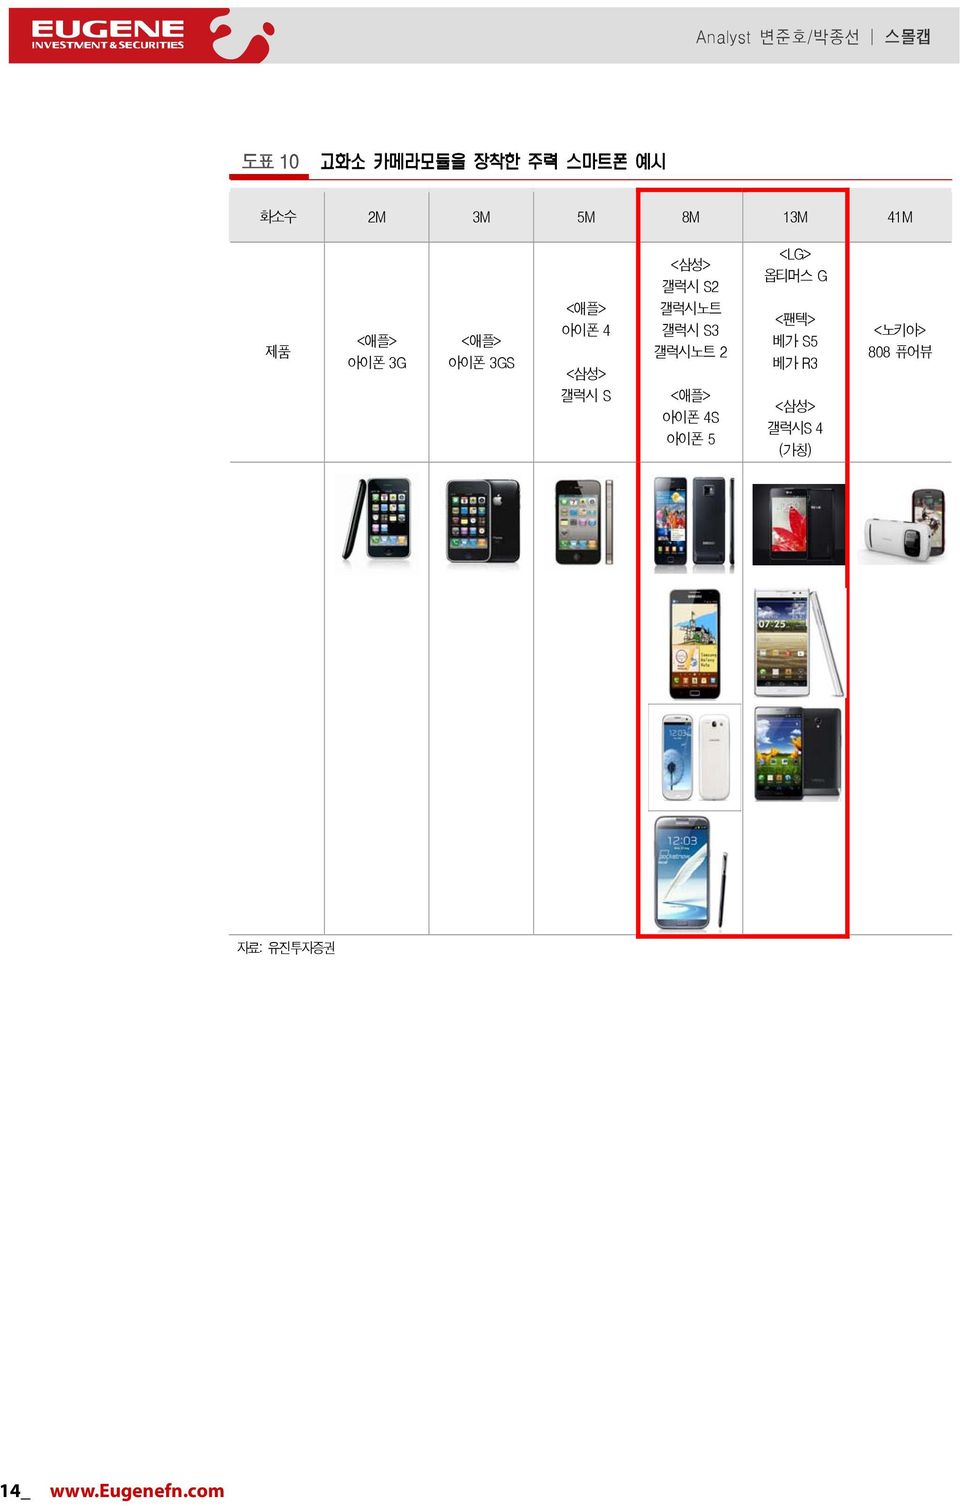 갤럭시노트 2 <애플> 아이폰 4S 아이폰 5 <LG> 옵티머스 G <팬텍> 베가 S5 베가 R3